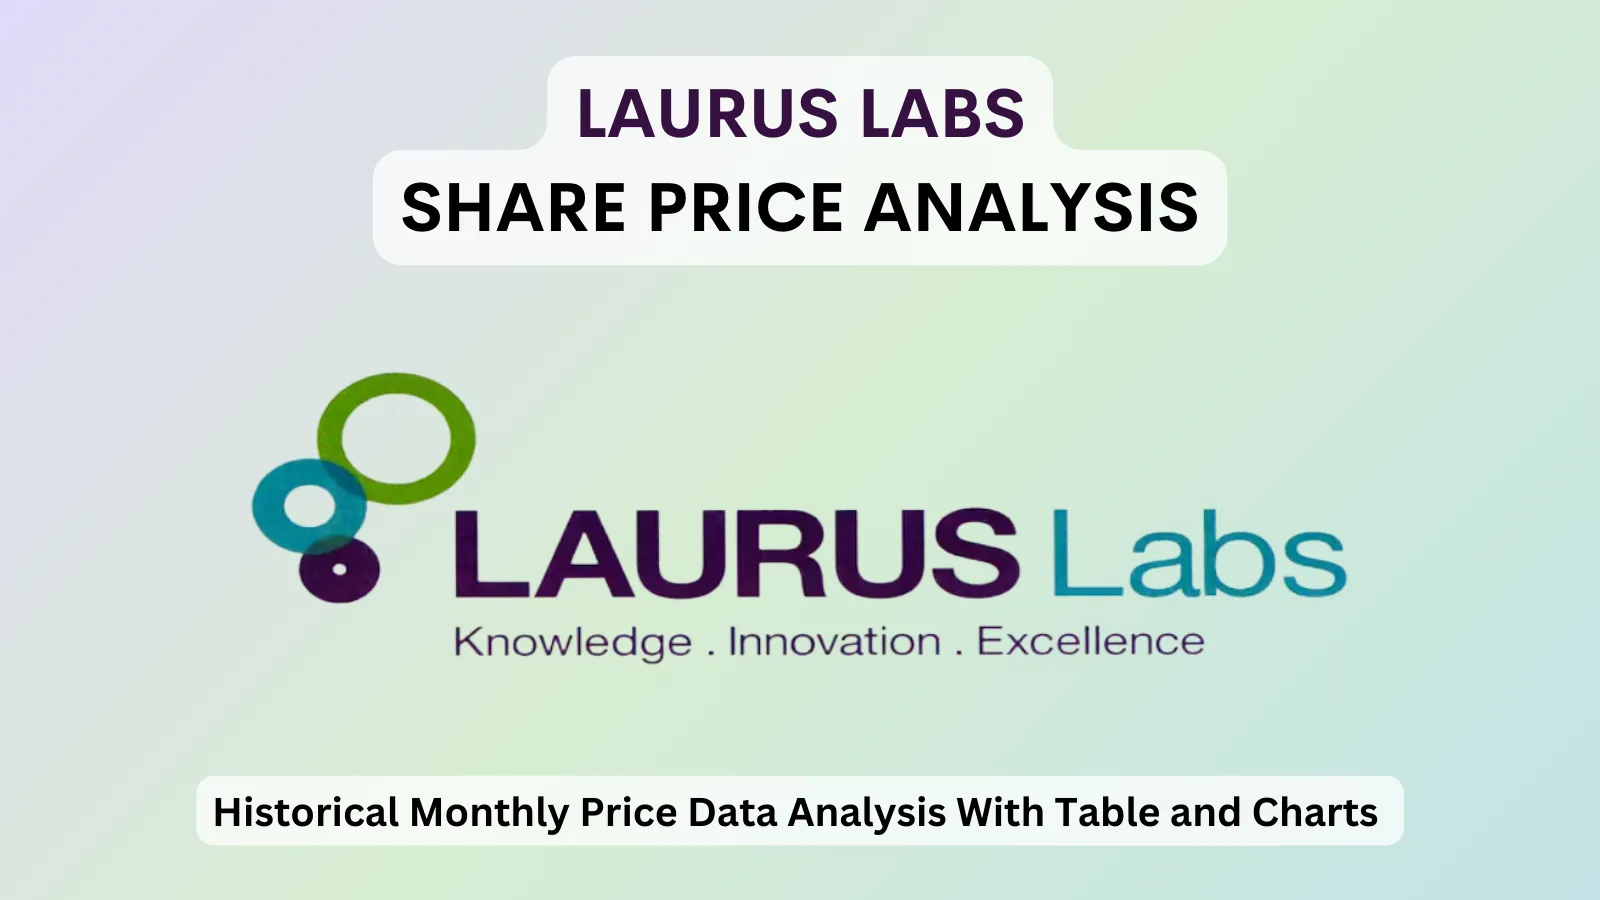 Laurus Labs share price analysis